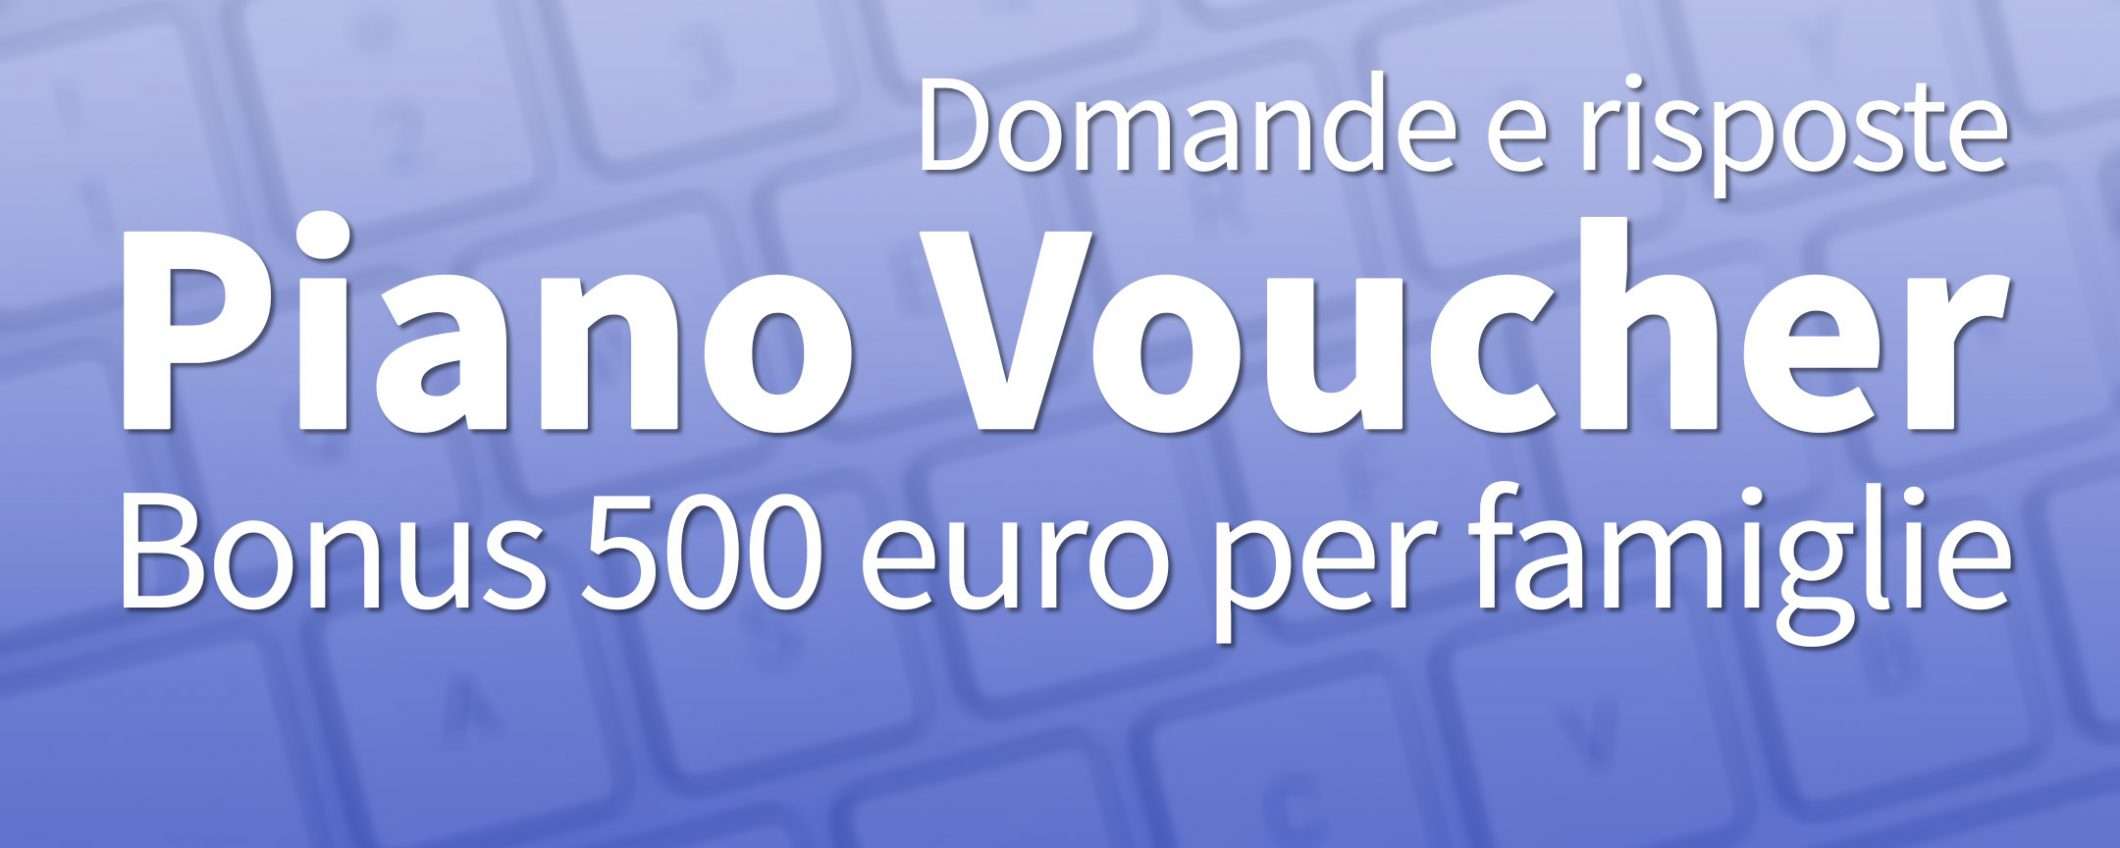 Bonus 500 euro PC e Internet: domande e risposte